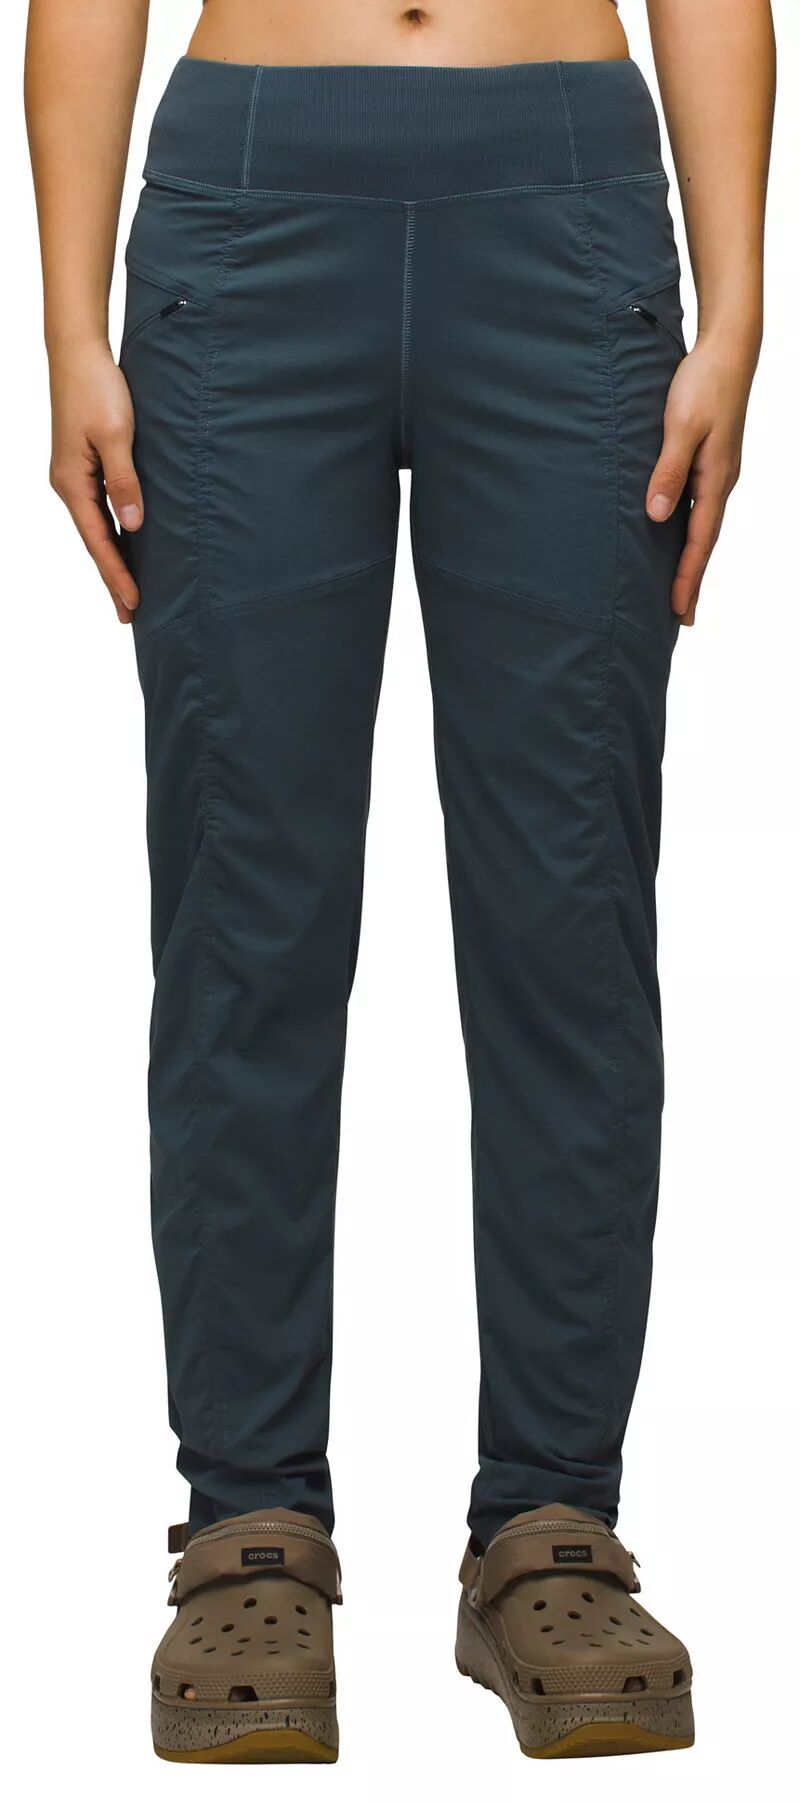 Женские брюки Prana Koen, серый